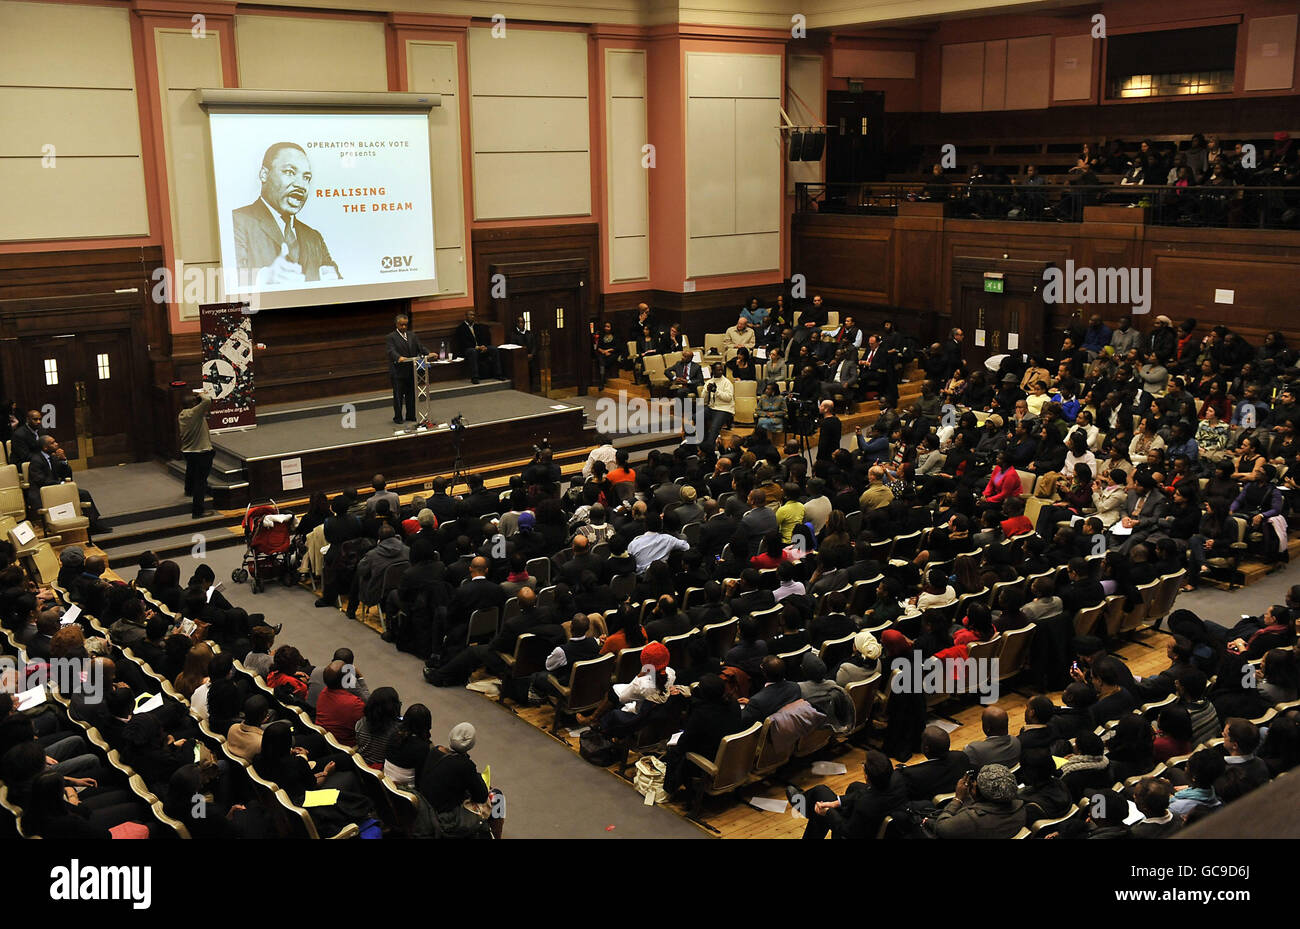 Le leader AMÉRICAIN des droits civiques, le révérend Al Sharpton, s'exprime lors d'un rassemblement pour l'opération Black vote à Friends House, dans le centre de Londres. Banque D'Images